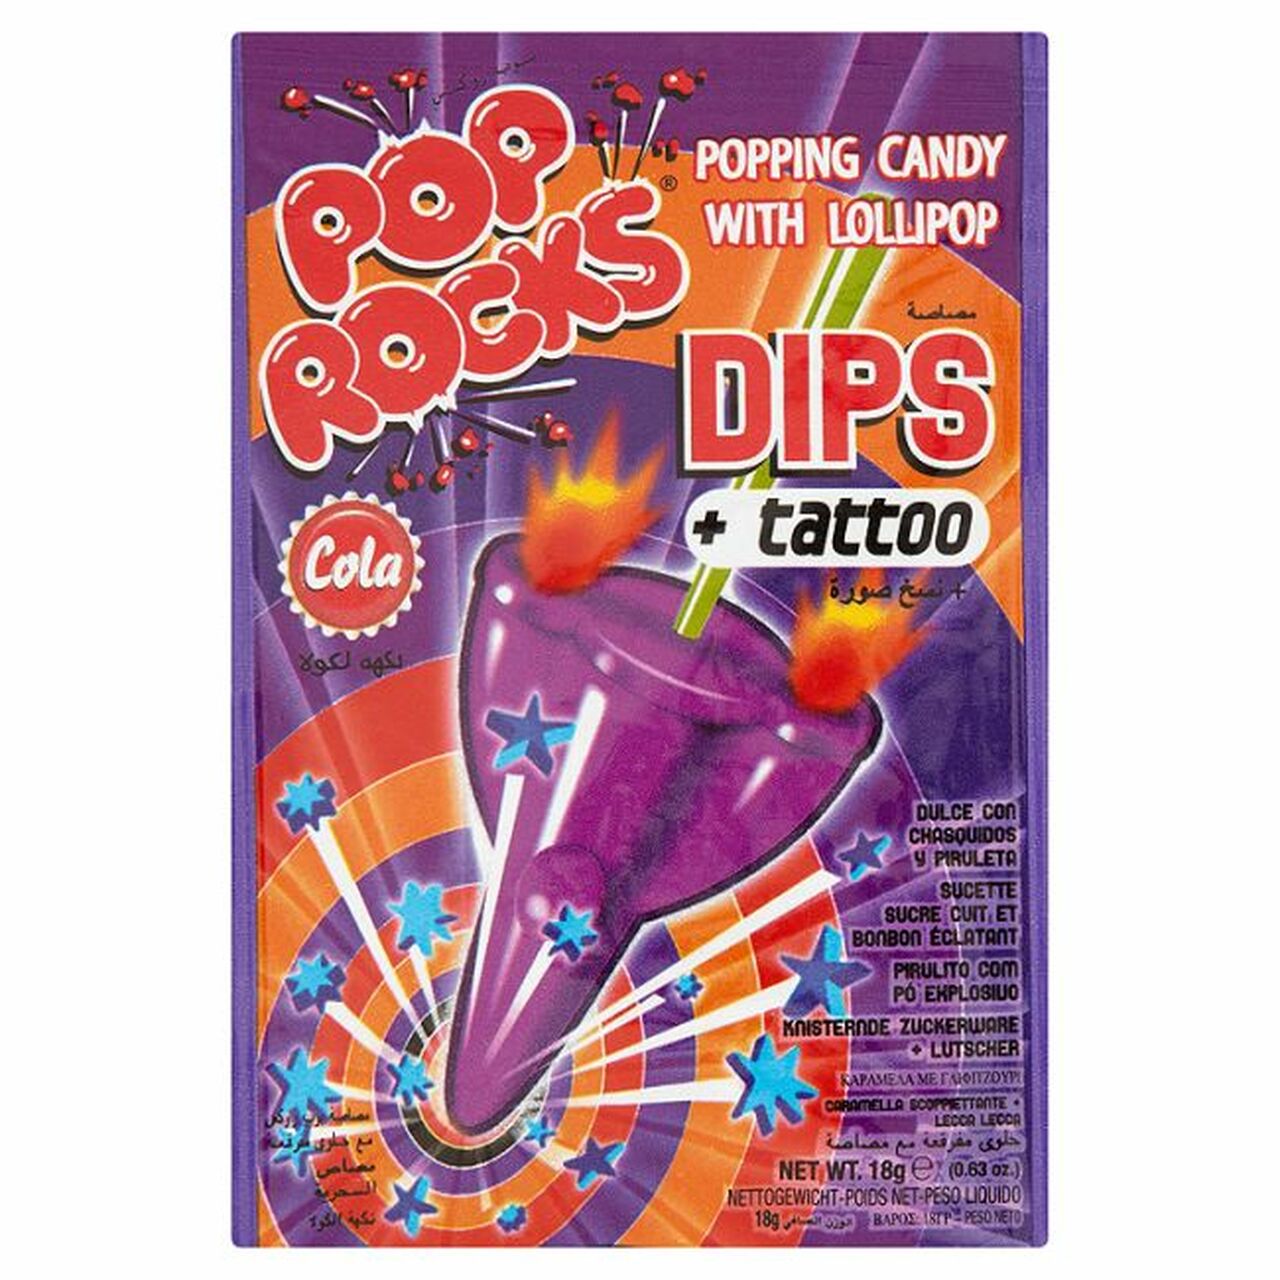 Pop Rocks Dips Cola + Tattoo 18g